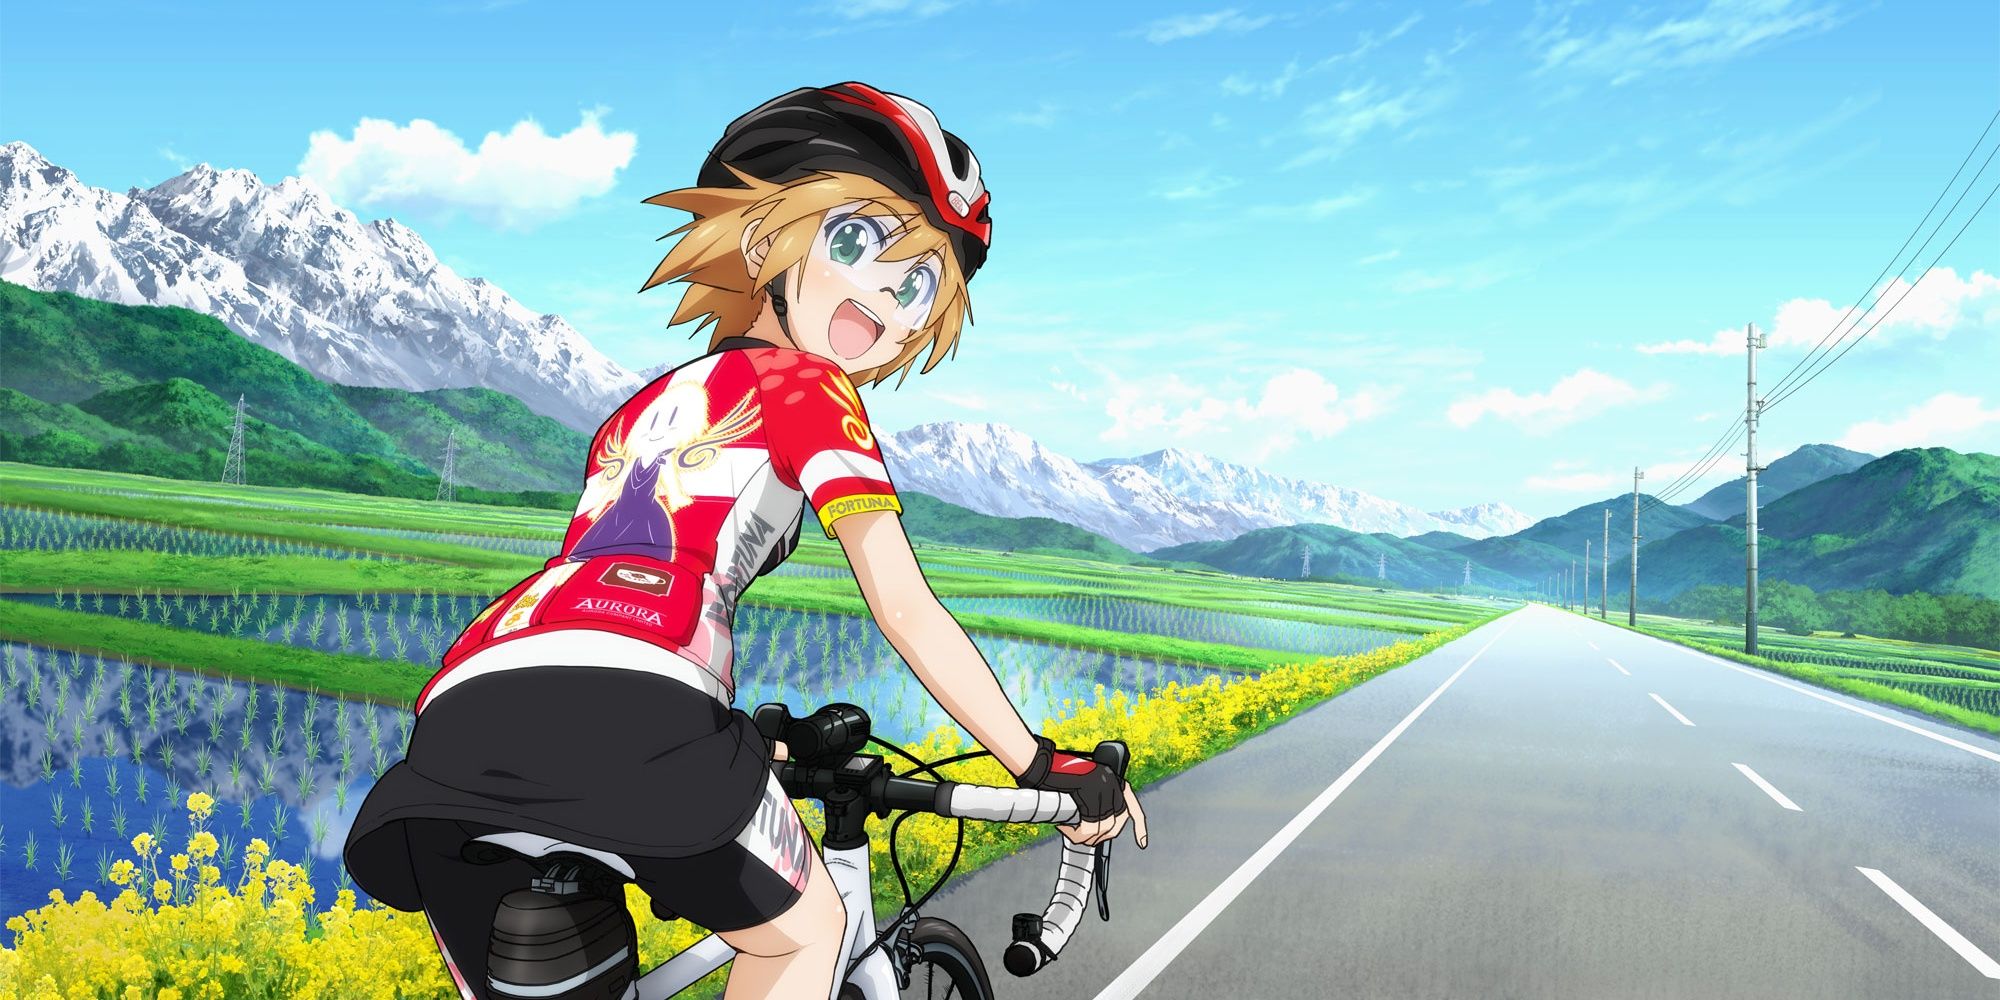 anime girl bike scene｜TikTok Search